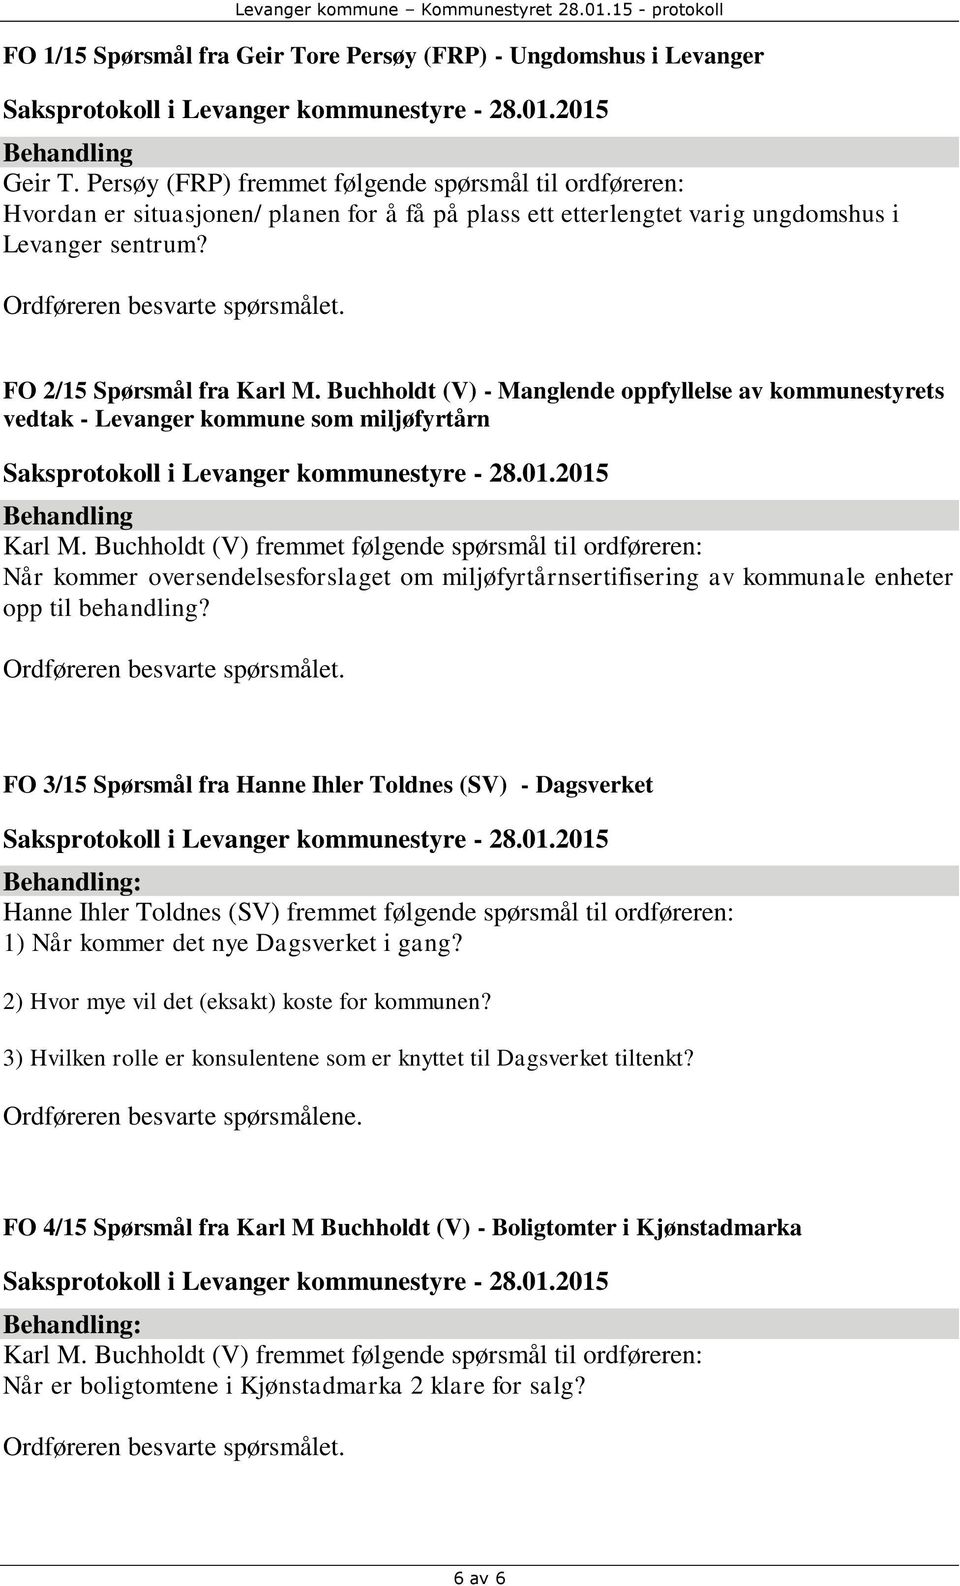 FO 2/15 Spørsmål fra Karl M. Buchholdt (V) - Manglende oppfyllelse av kommunestyrets vedtak - Levanger kommune som miljøfyrtårn Behandling Karl M.